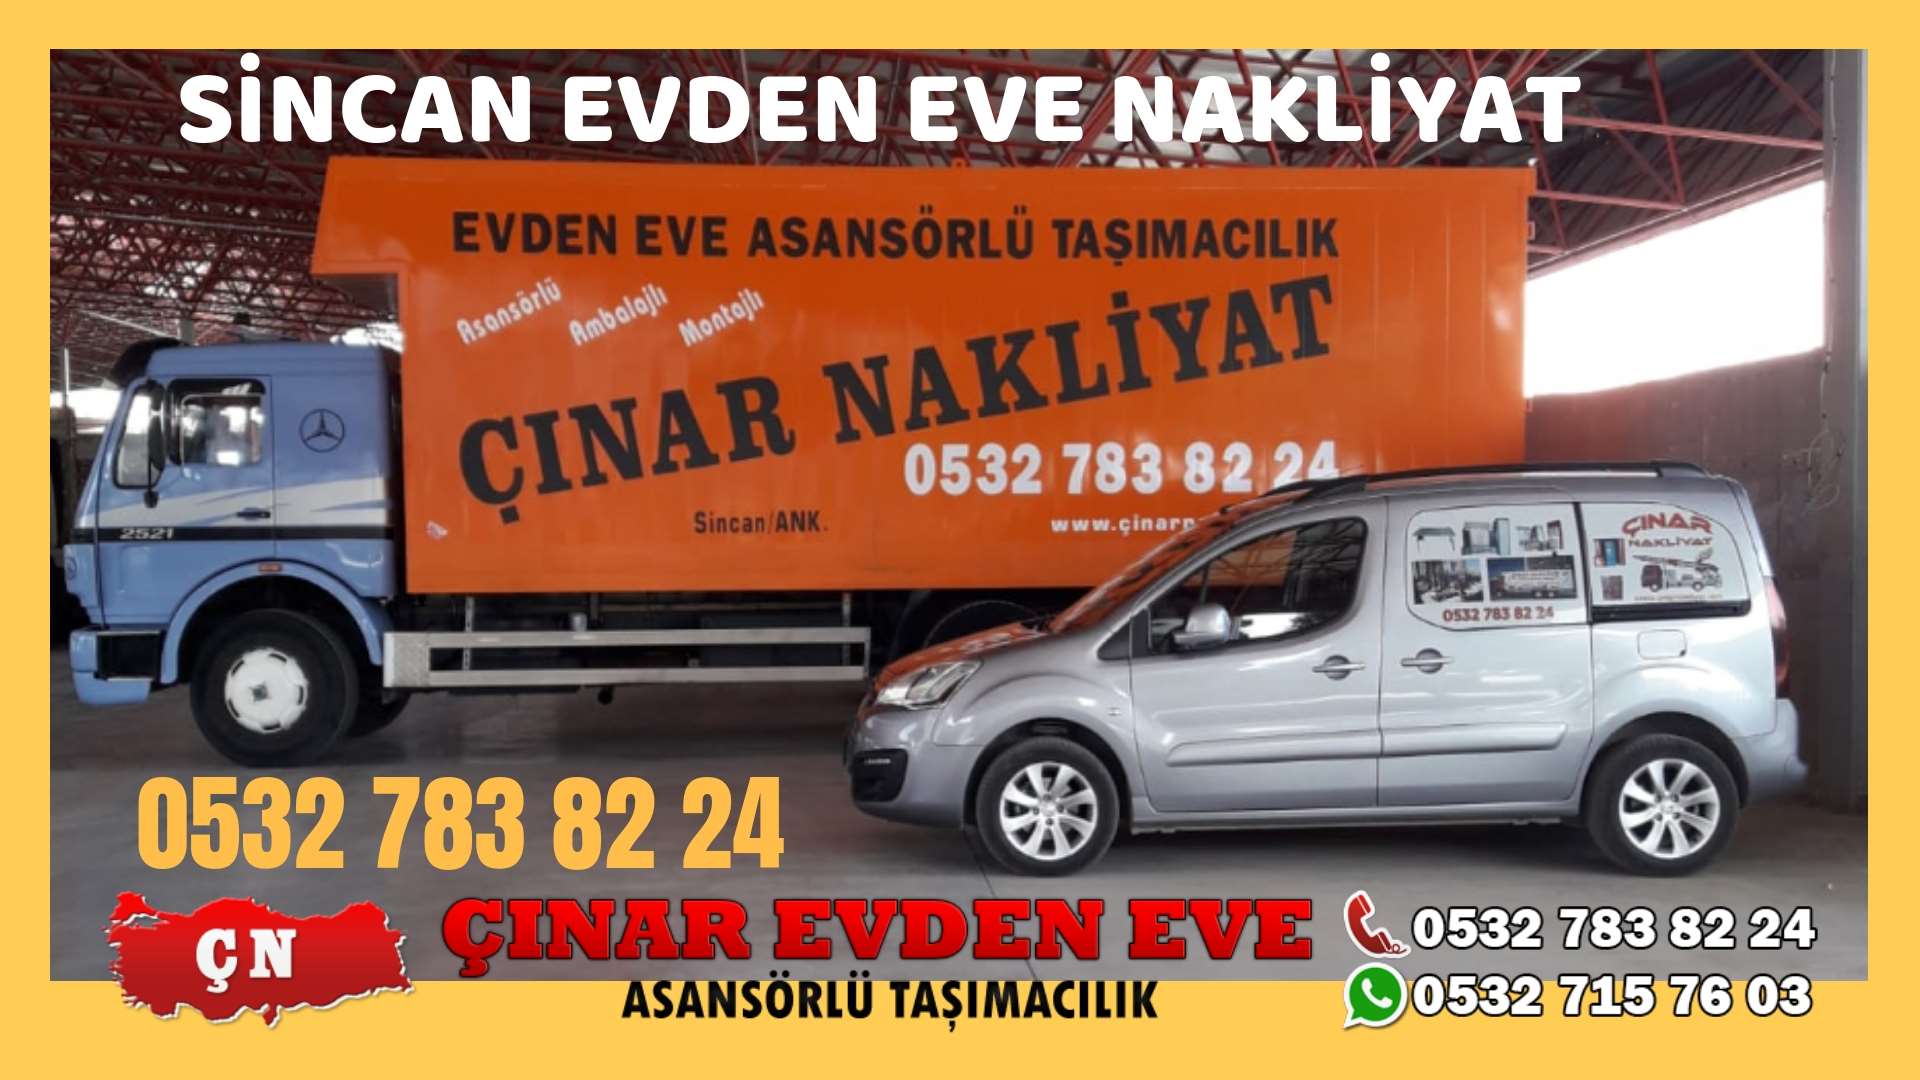 Ankara Eryaman Sincan evden eve asansörlü nakliyat en ucuz nakliye 0532 715 76 03